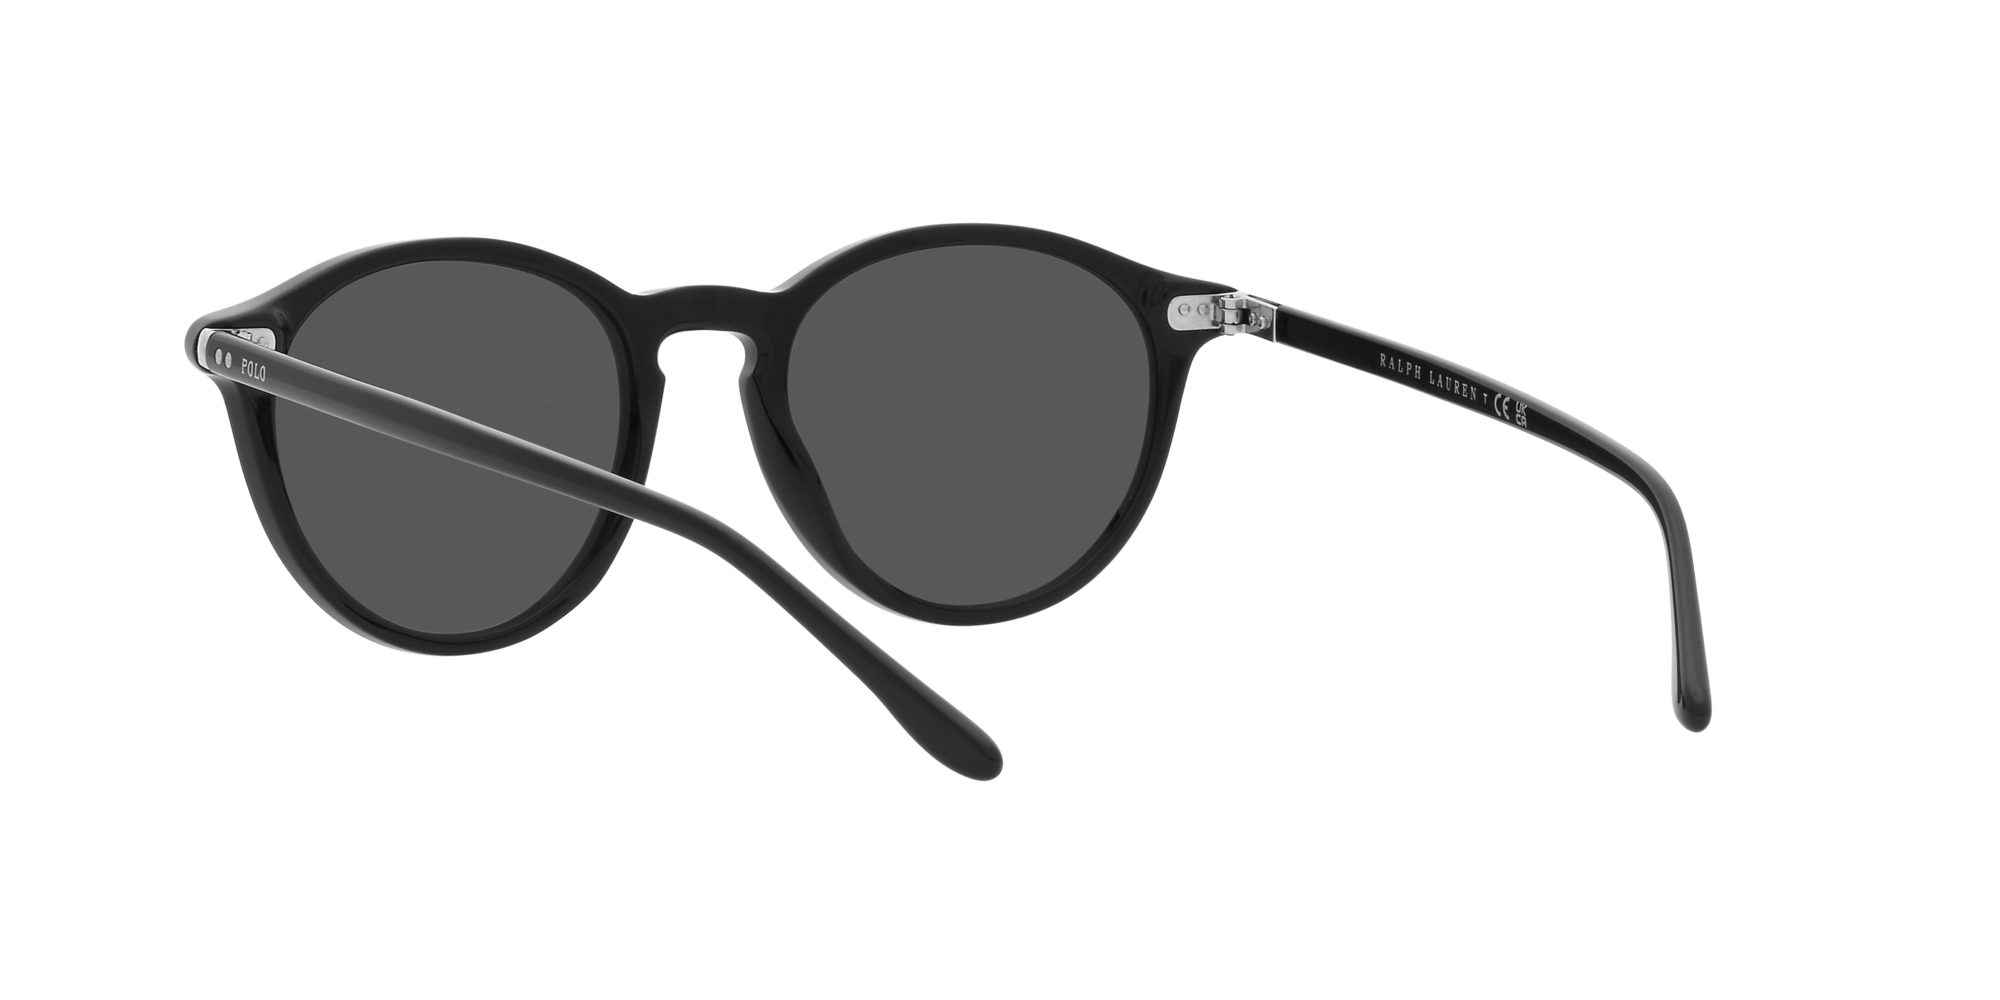 Polo Ralph Lauren Sonnenbrille PH4193 500187 schwarz glänzend